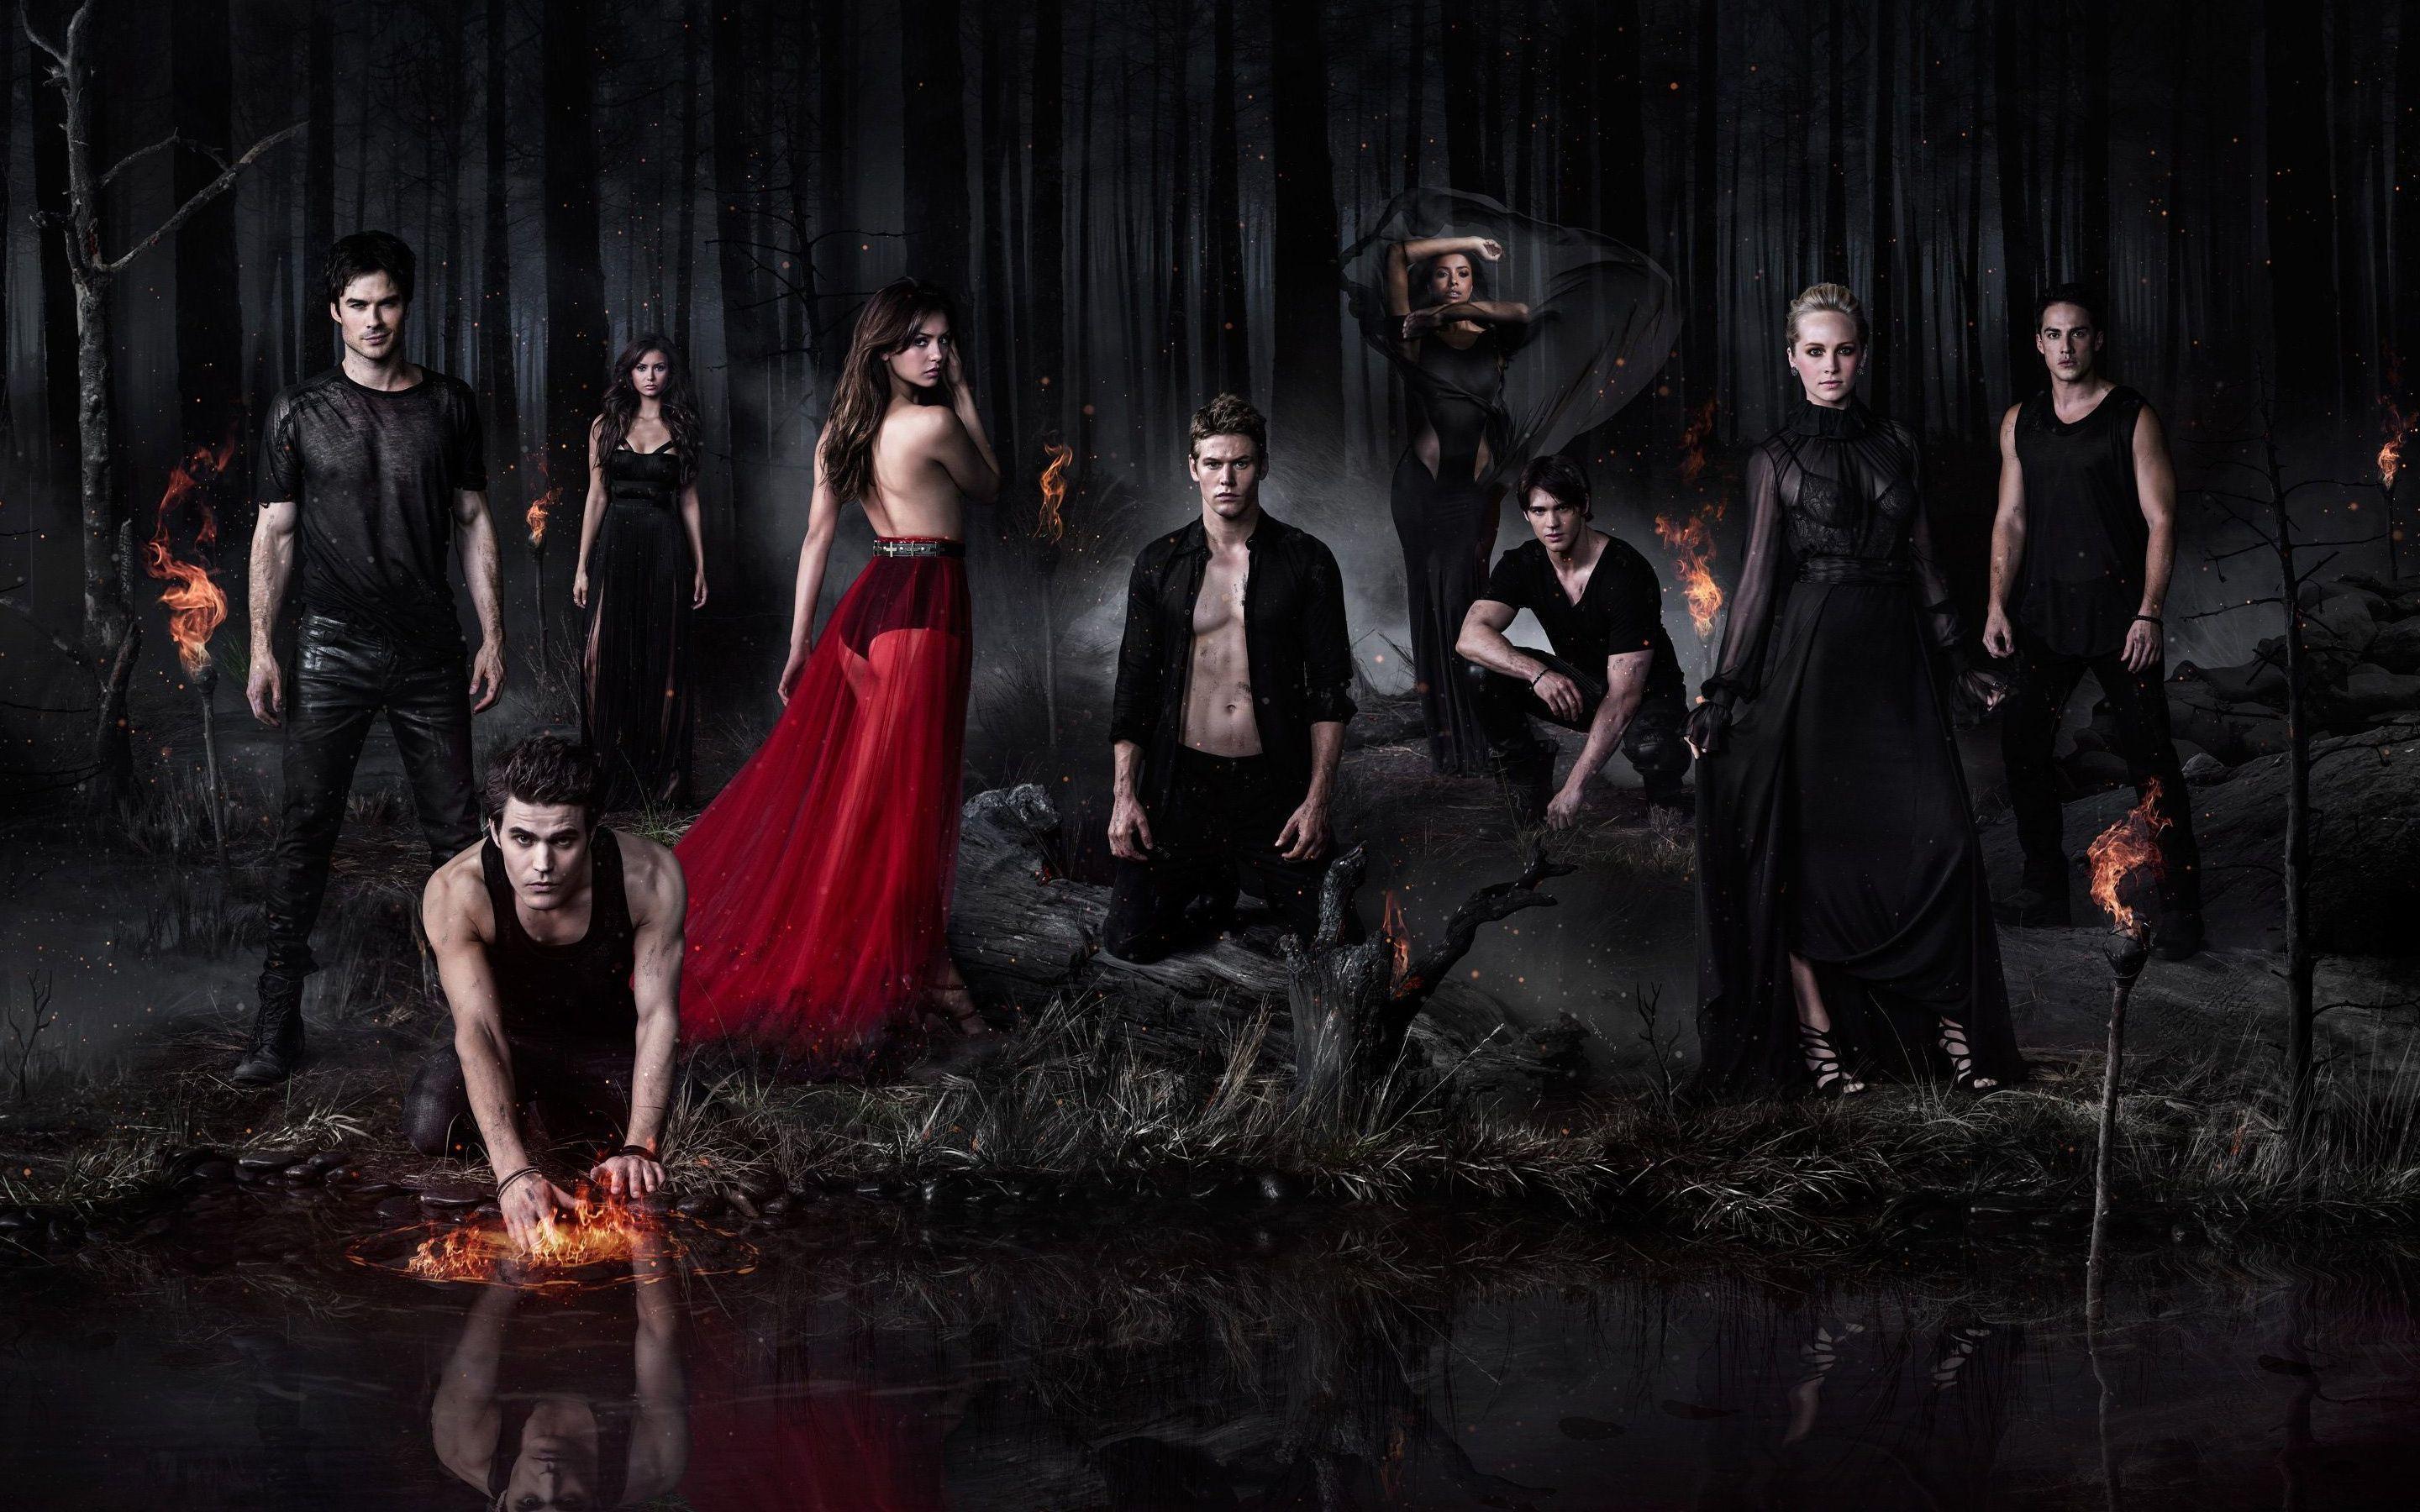 movies, The Originals, rebekah, girl, poster film, vampire, wallpaper